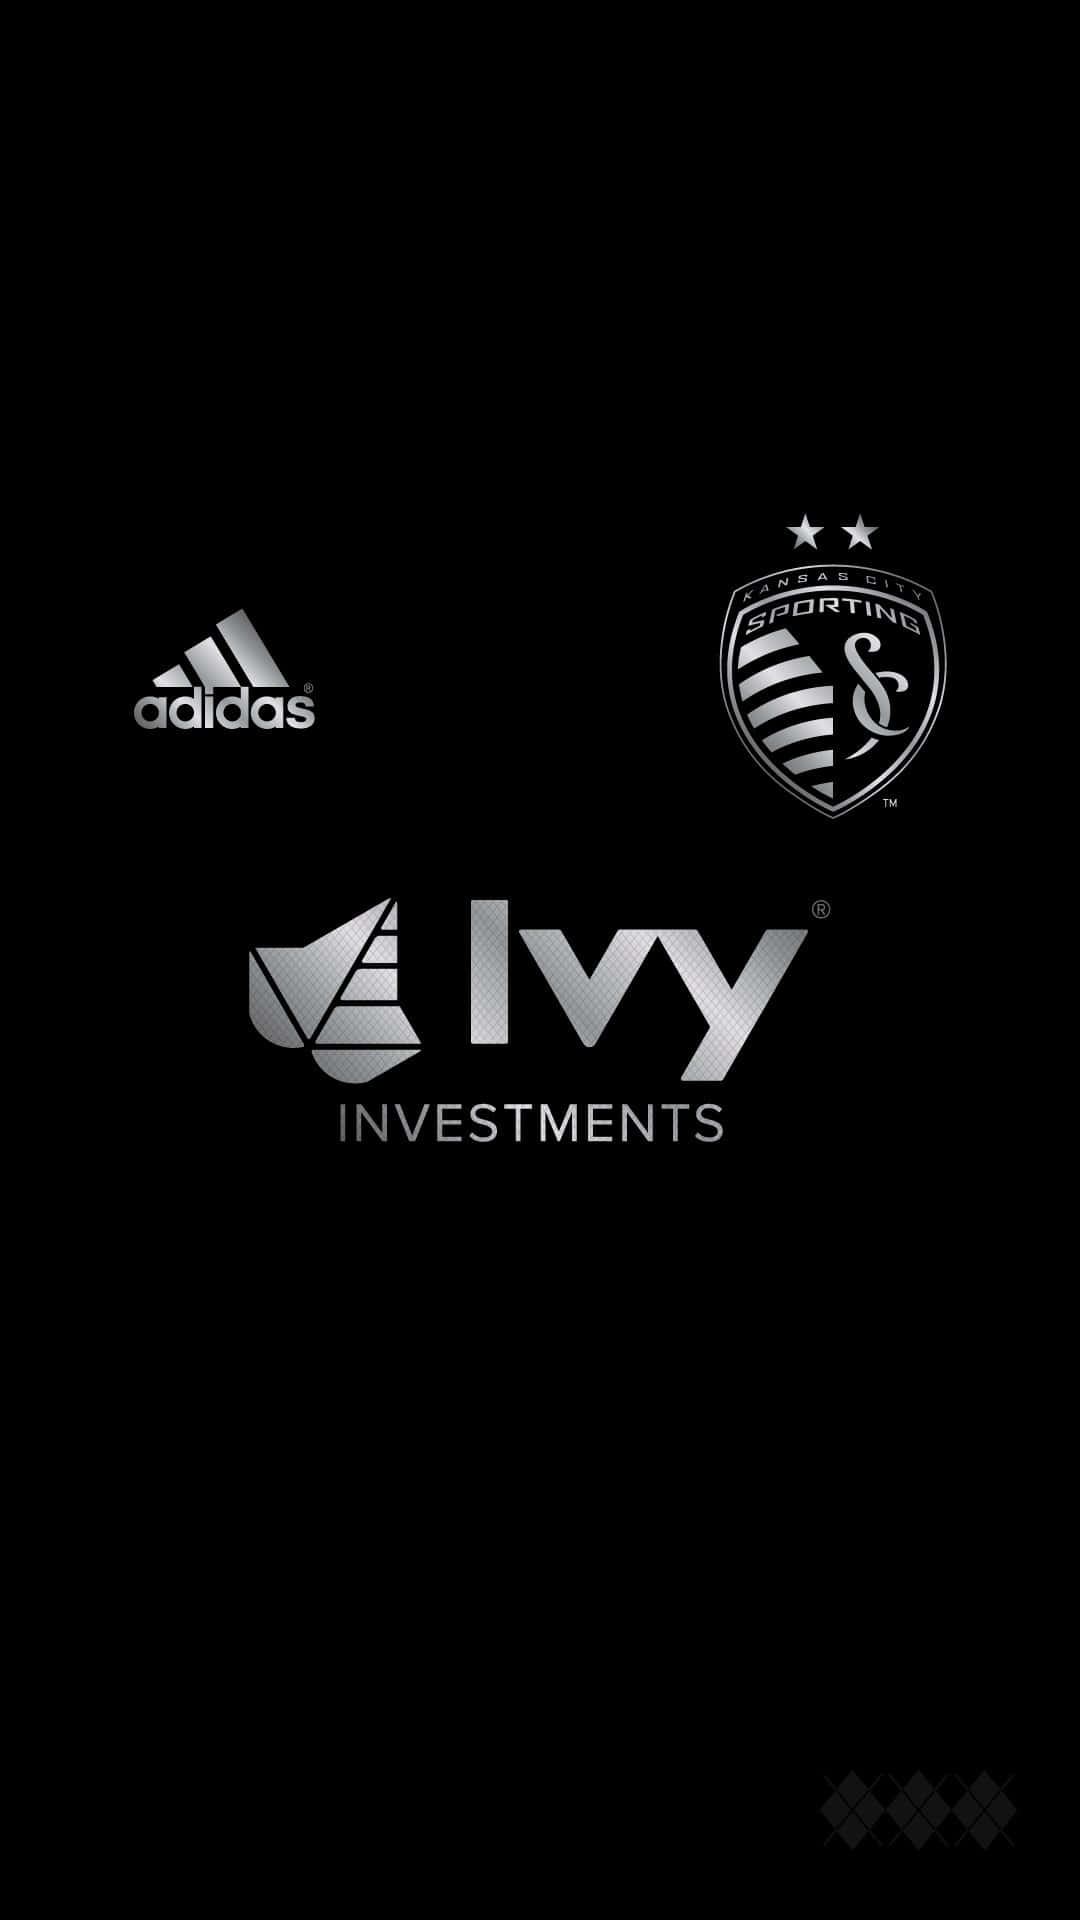 Sportingkansas City-logo Mit Adidas Und Ivy Investments Wallpaper